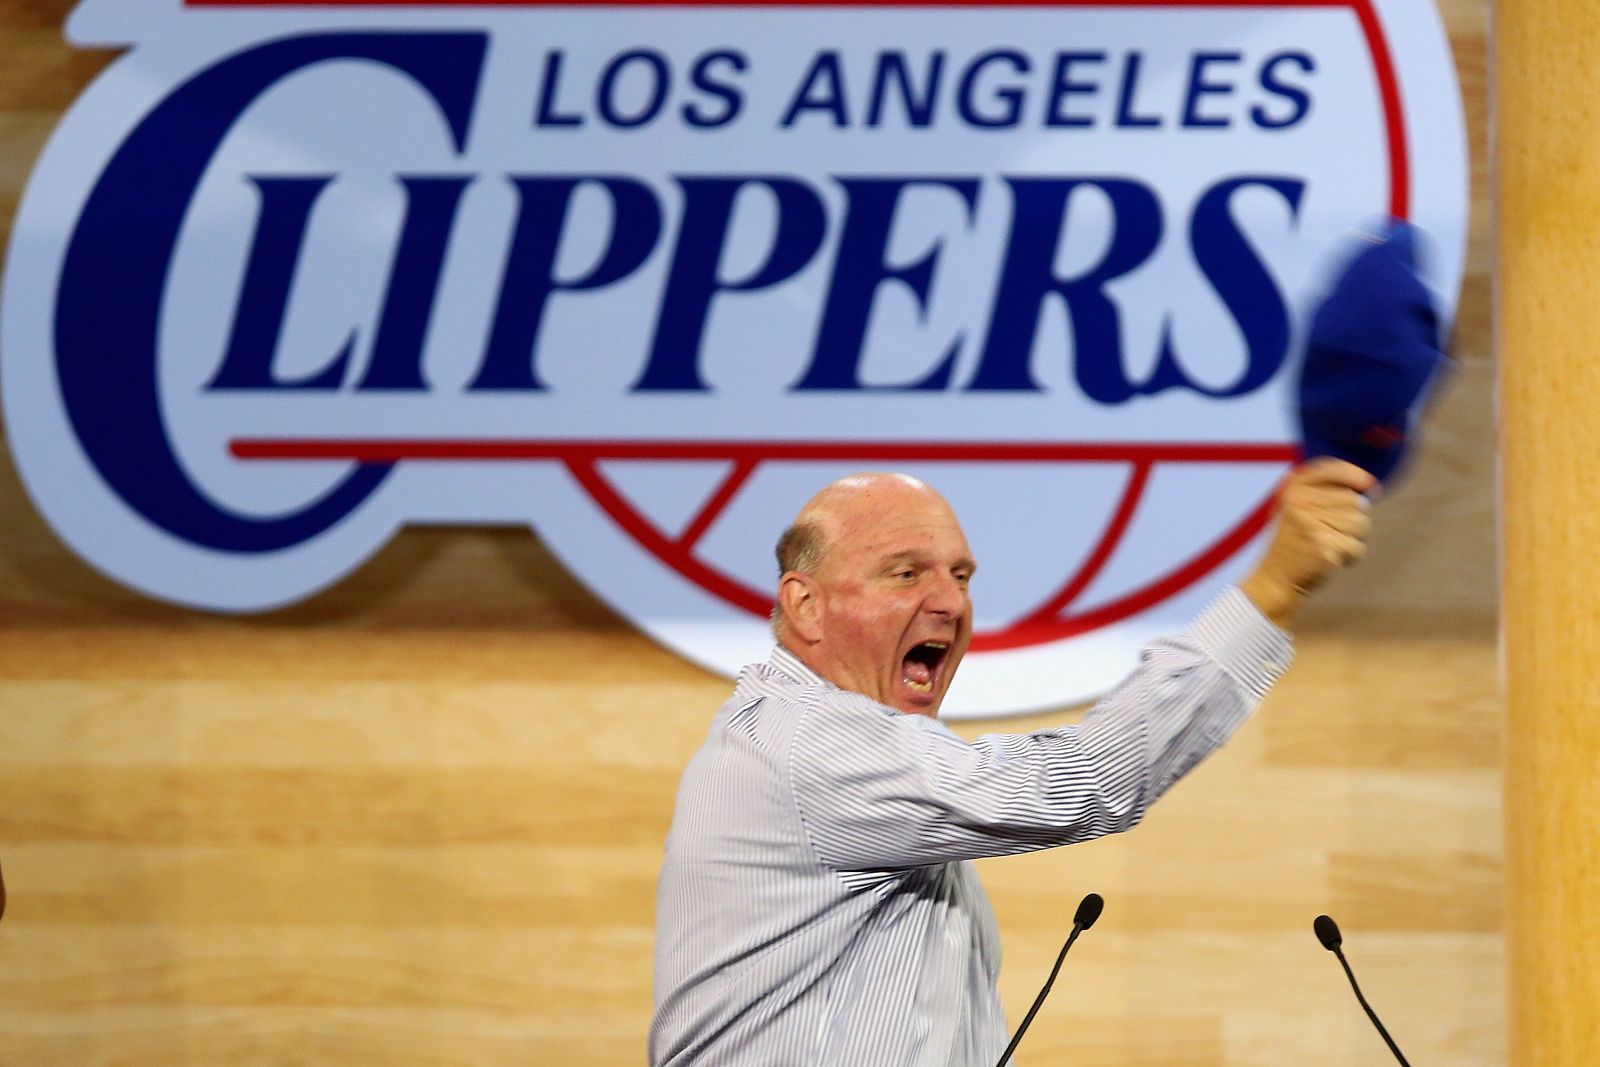 Intervención de Ballmer en el festival de Los Ángeles Clippers